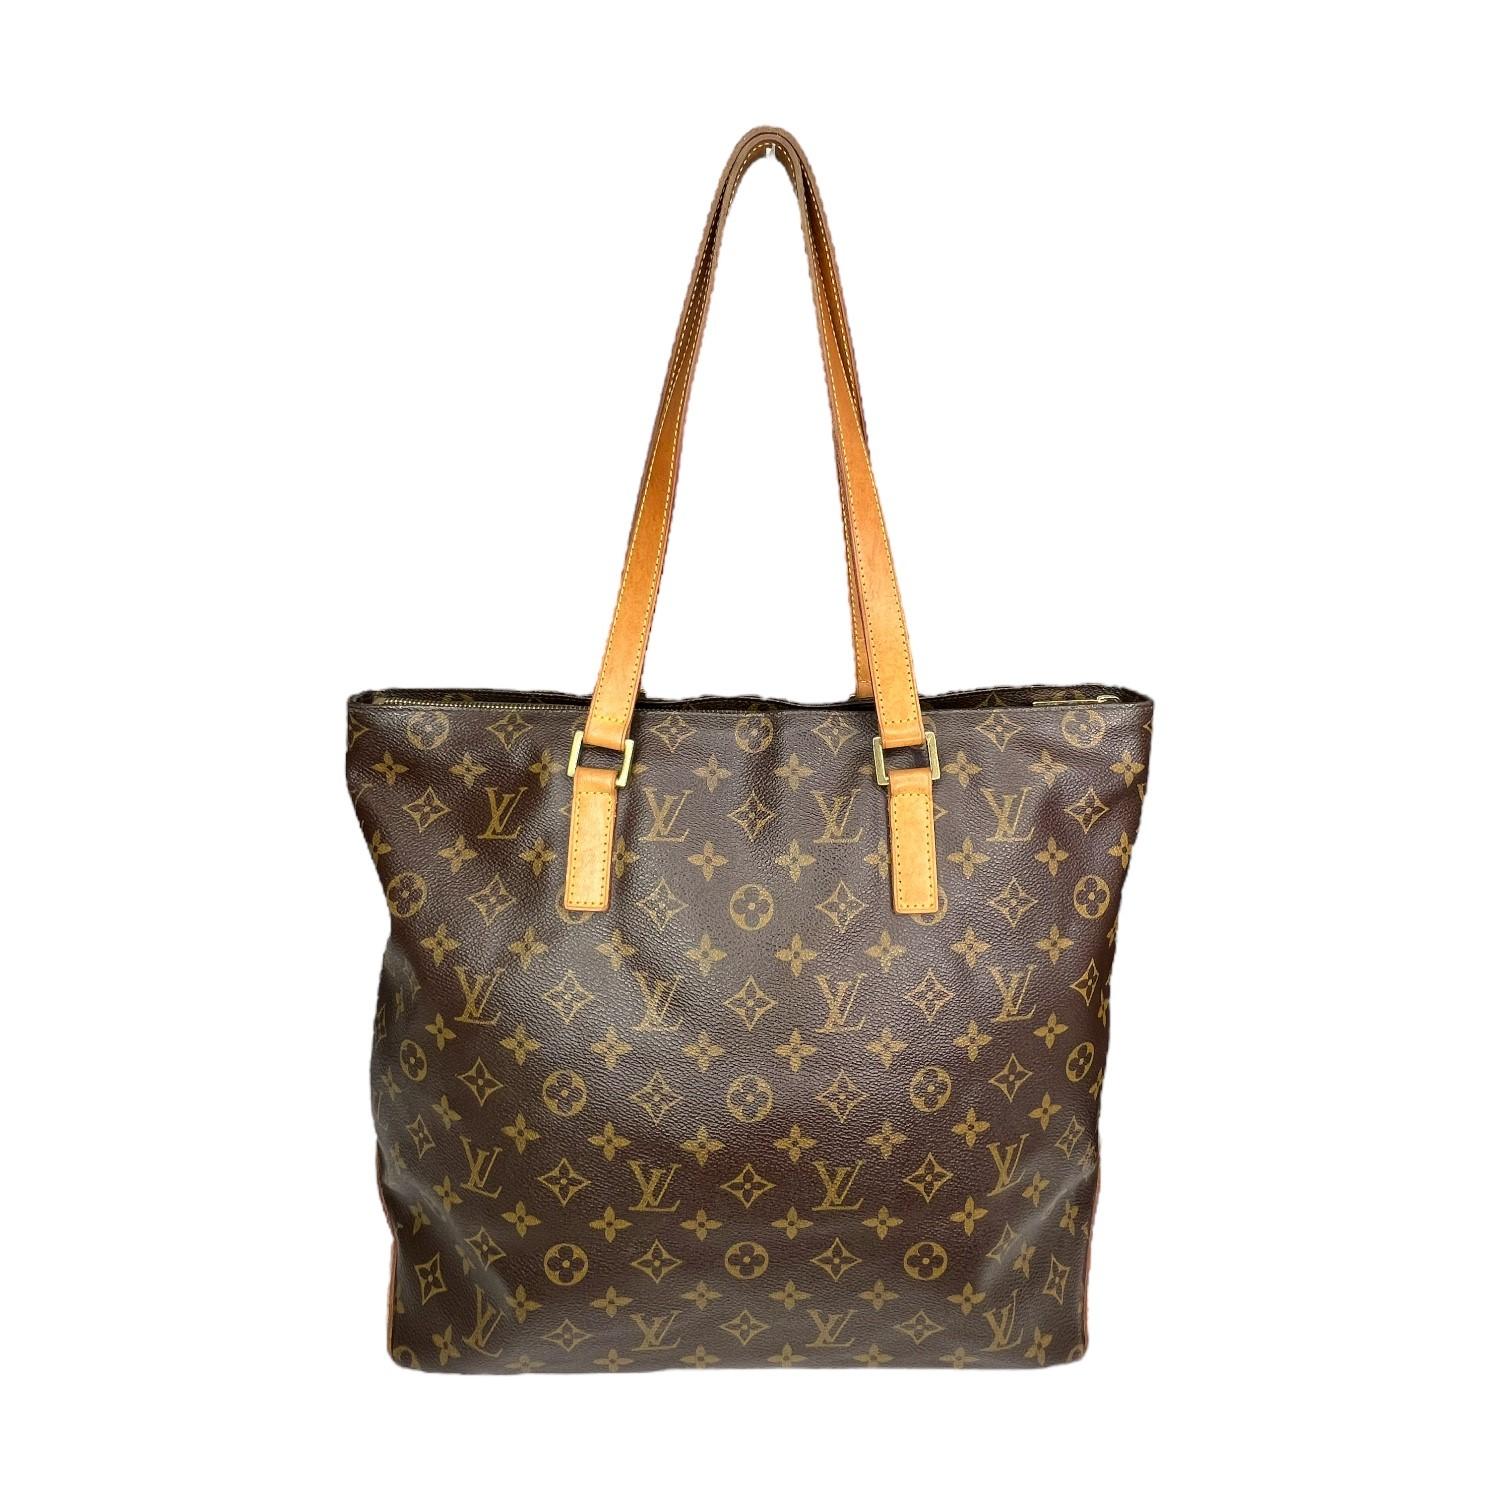 Ce sac à main Monogram Cabas Piano de Louis Vuitton a été fabriqué aux États-Unis en 2002. Il est finement conçu avec la toile Monogram classique de Louis Vuitton, des garnitures en cuir et des accessoires en métal doré. Il est doté de deux